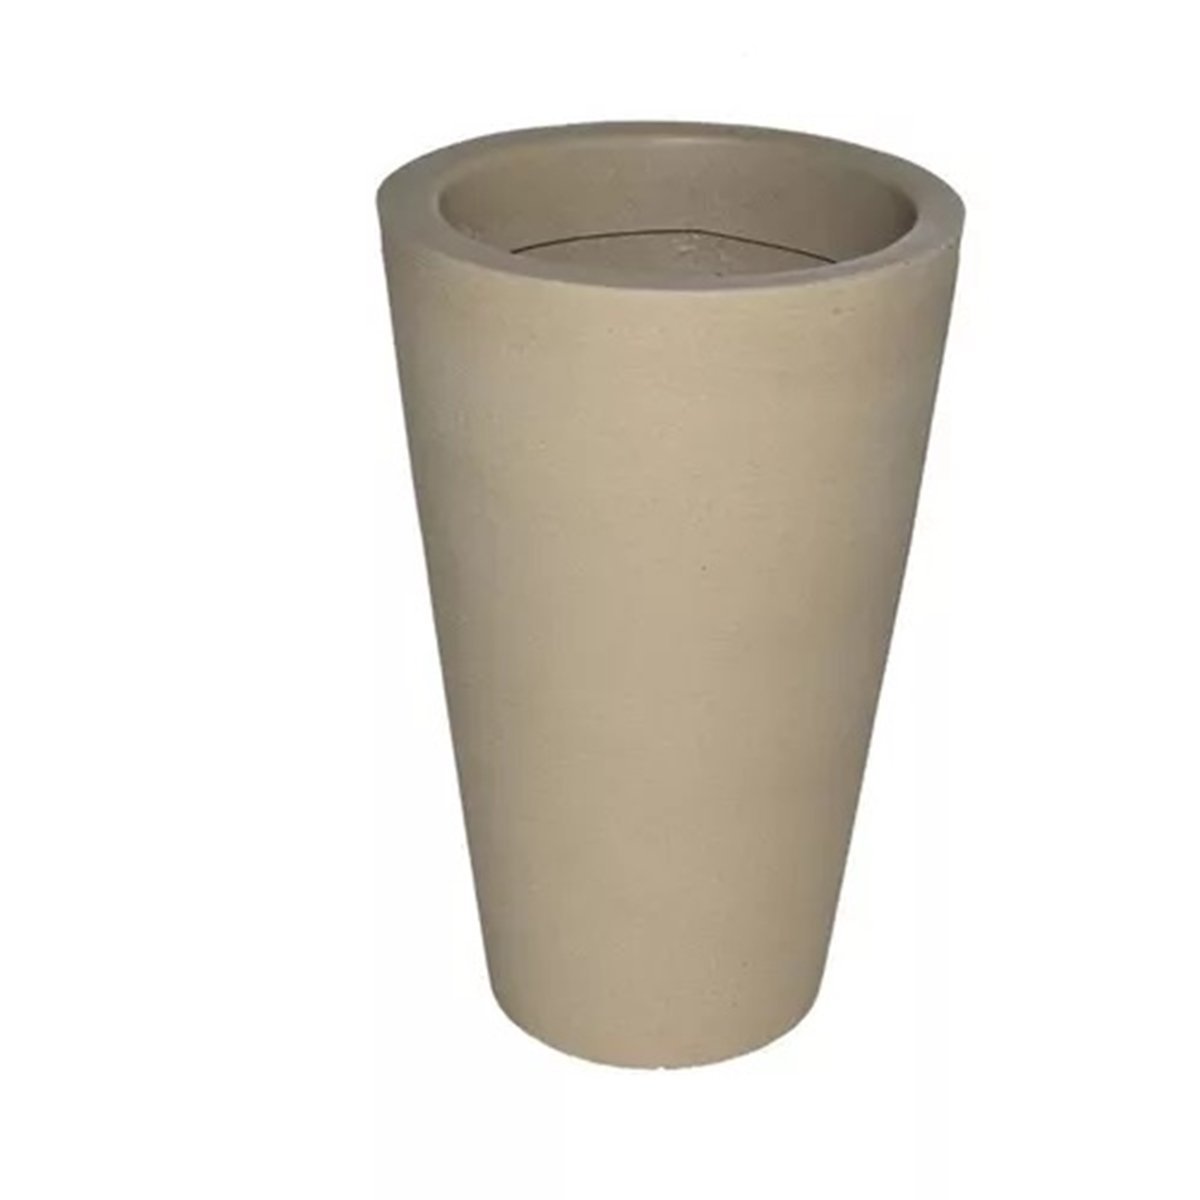 Vaso Decorativo para Plantas Coluna Redonda Cone Tamanho G:Bege